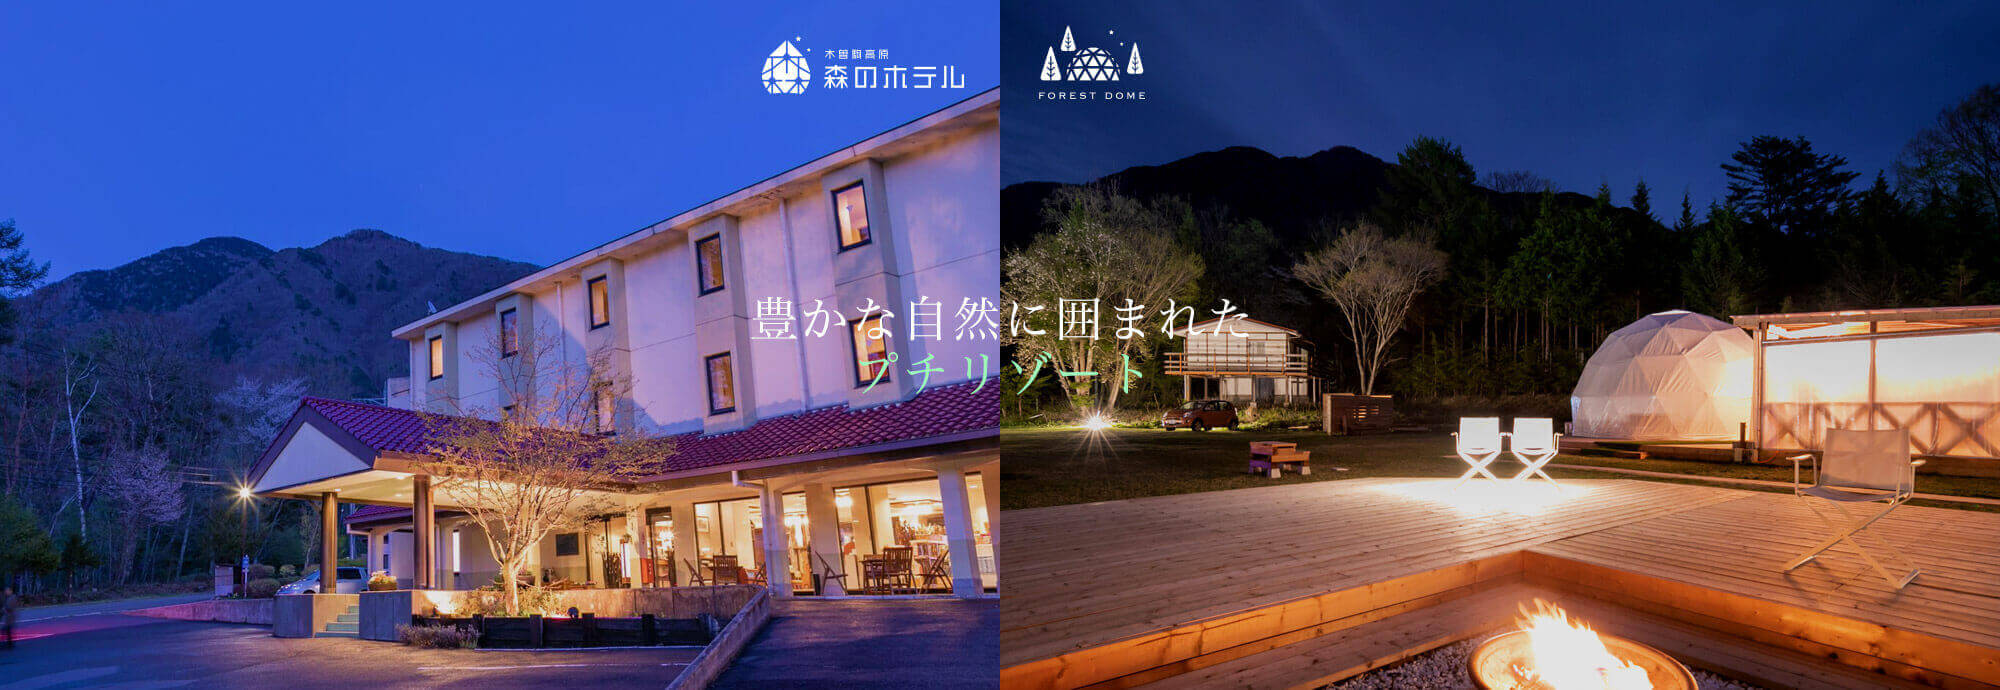 長野 木曽駒高原 YOSHINAKA 森のホテル